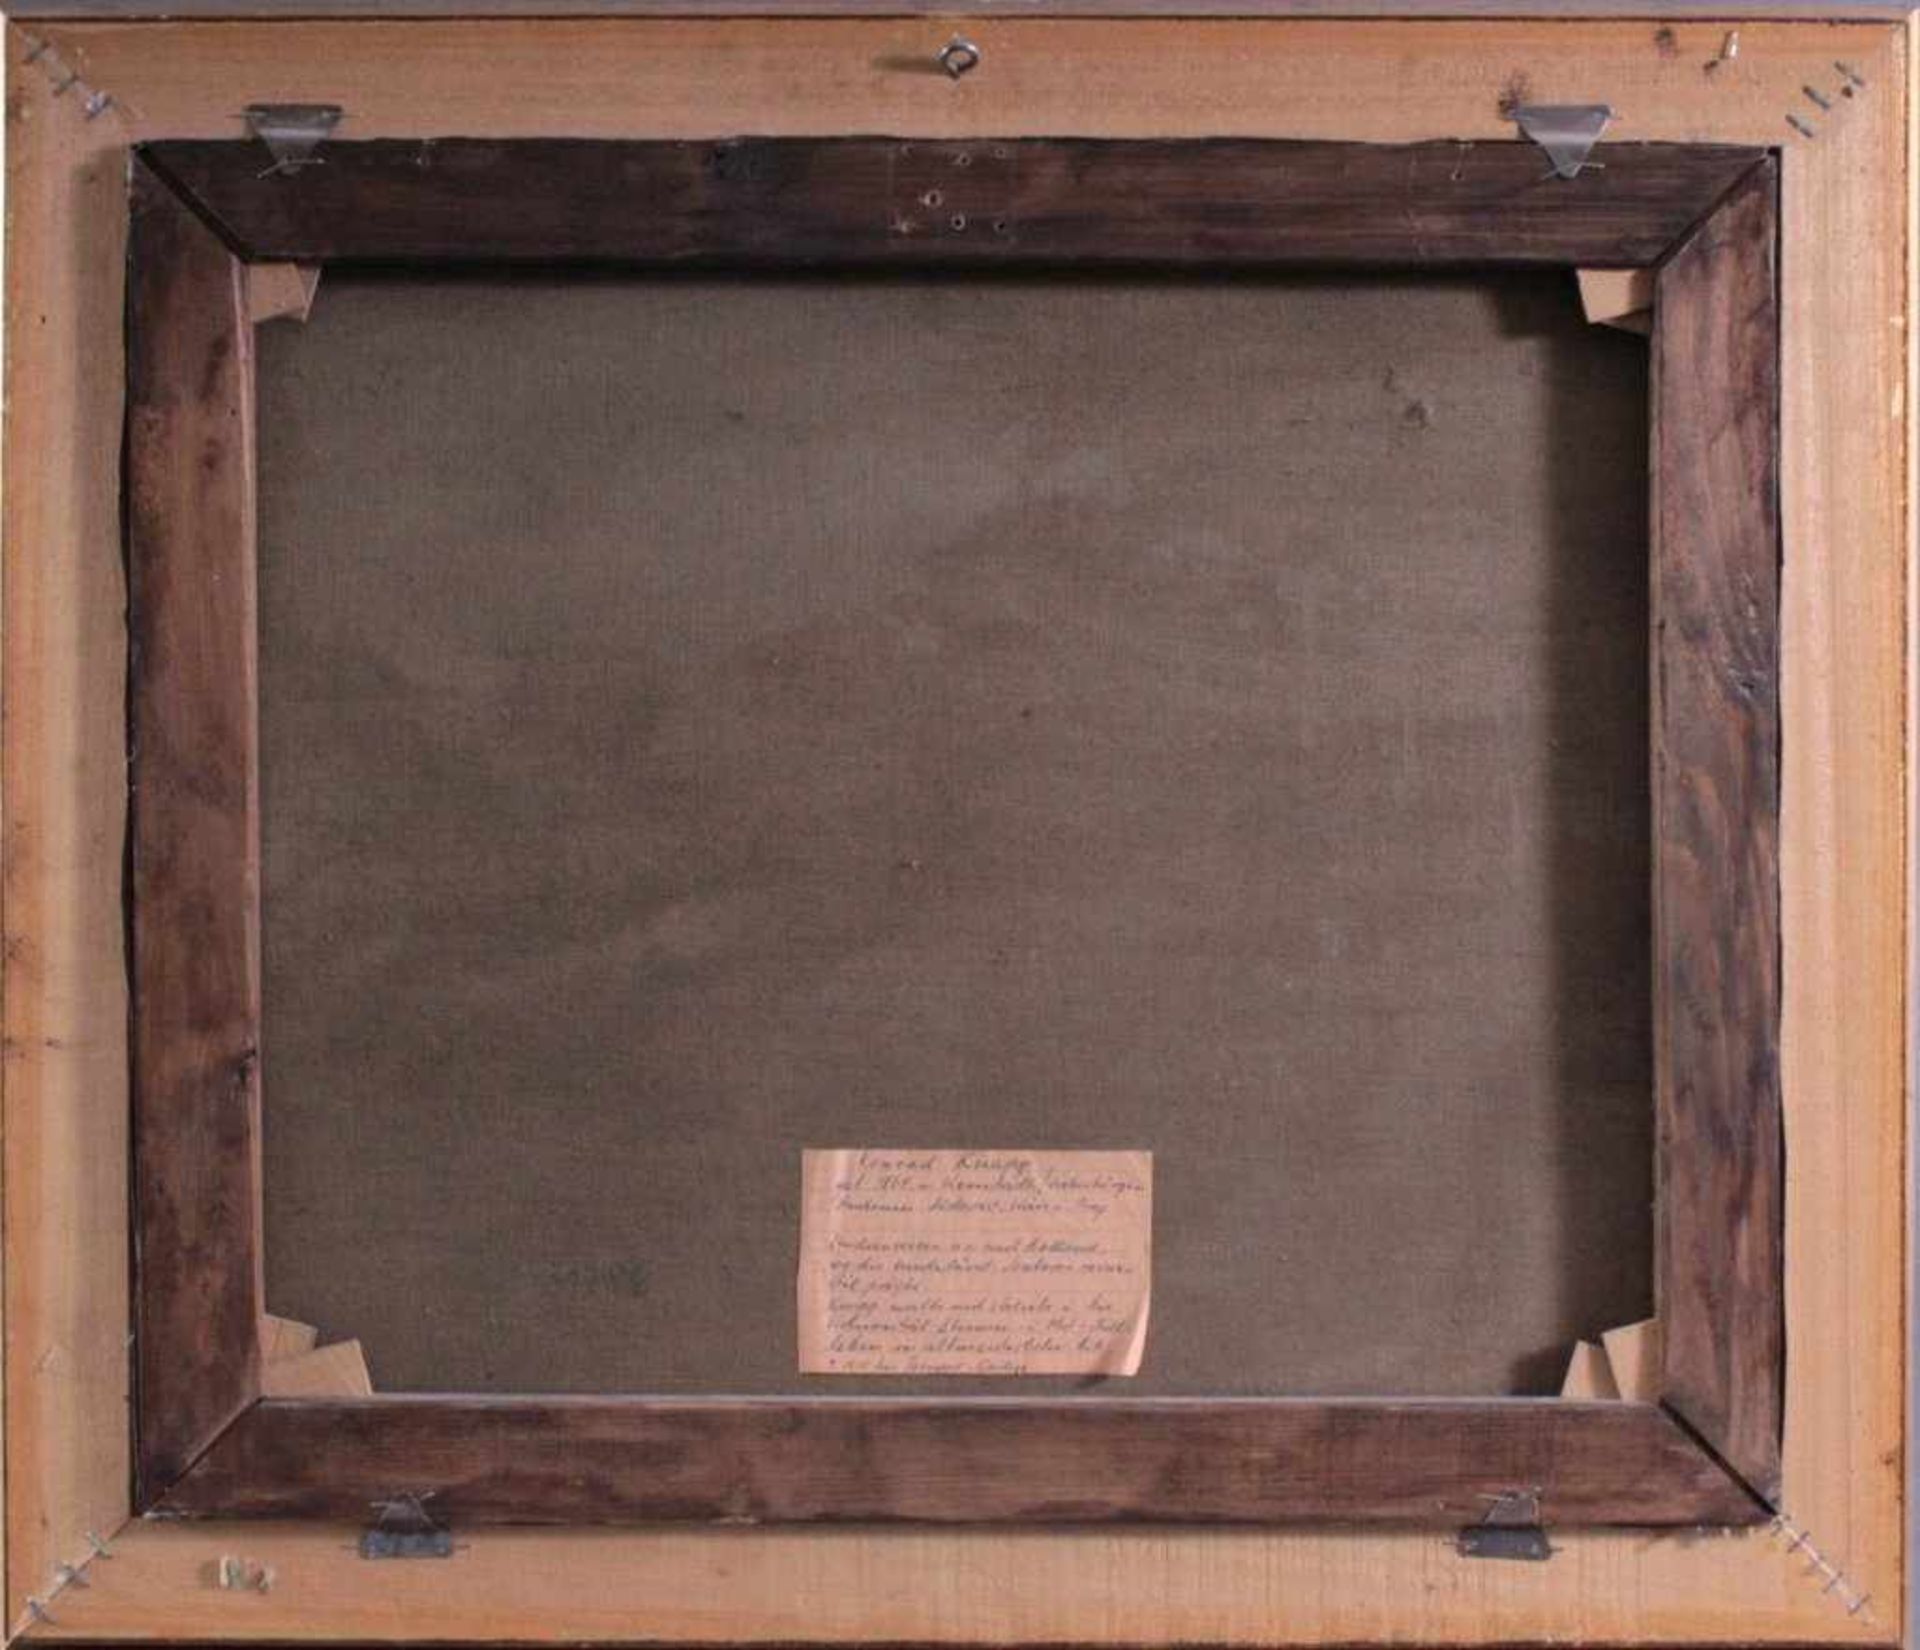 Stillleben mit Obst, 19. Jh., Konrad Knapp 1864-?Öl auf Leinwand gemalt, gerahmt, ca. 492 x 58 cm. - Bild 4 aus 5